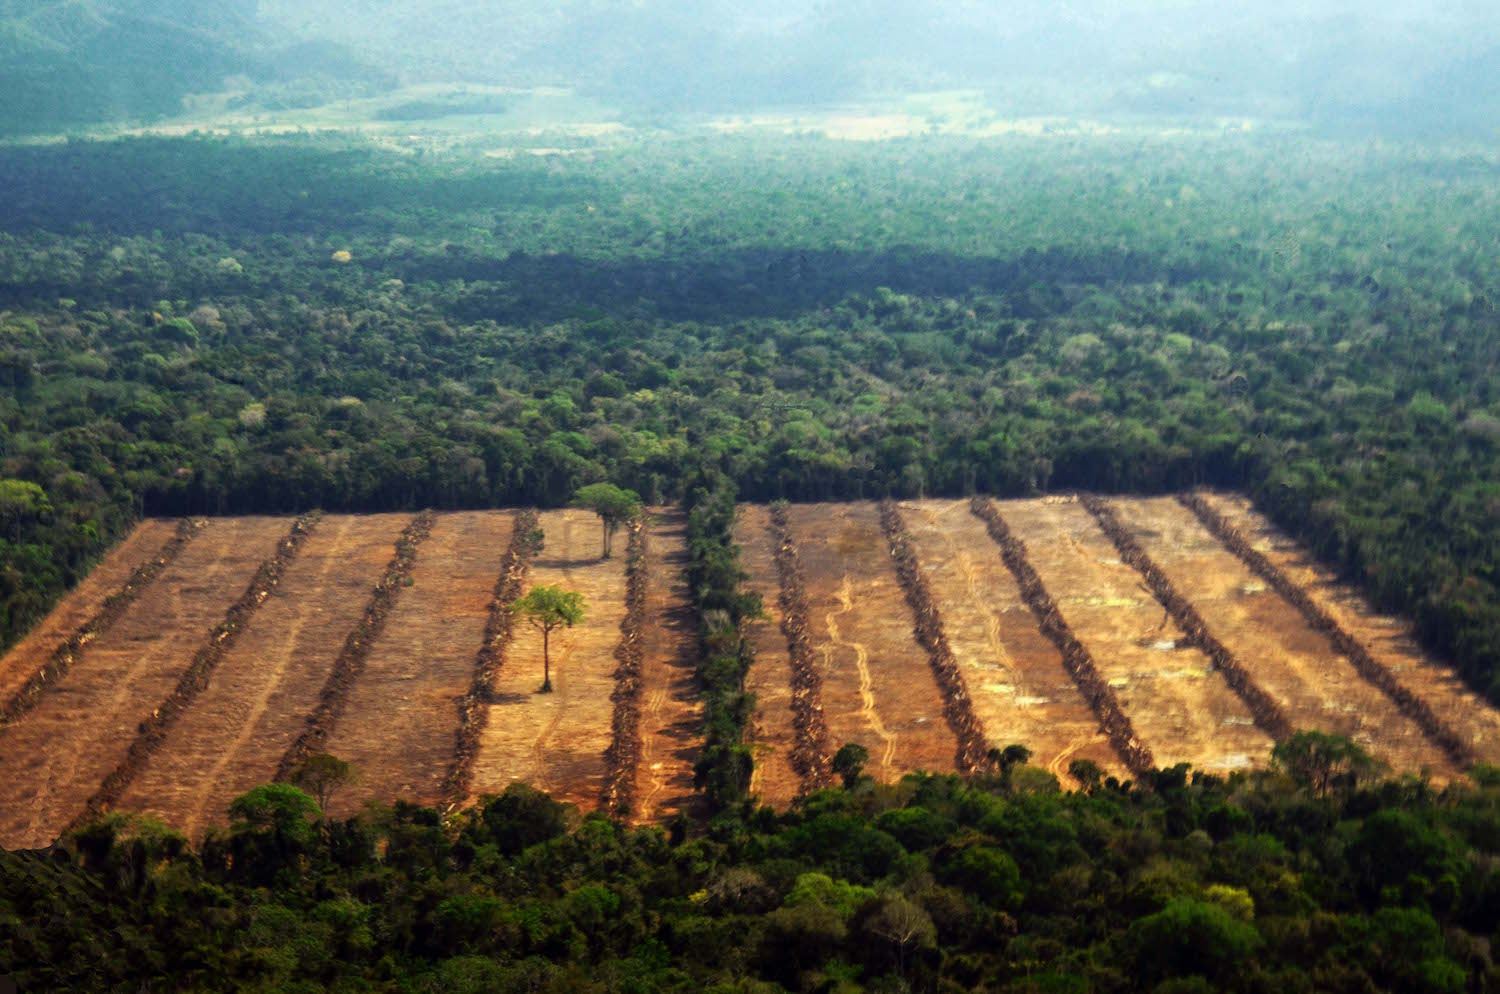 Para evadir la culpa, Bolsonaro planea divulgar qué países importan madera ilegal de Amazonía brasileña